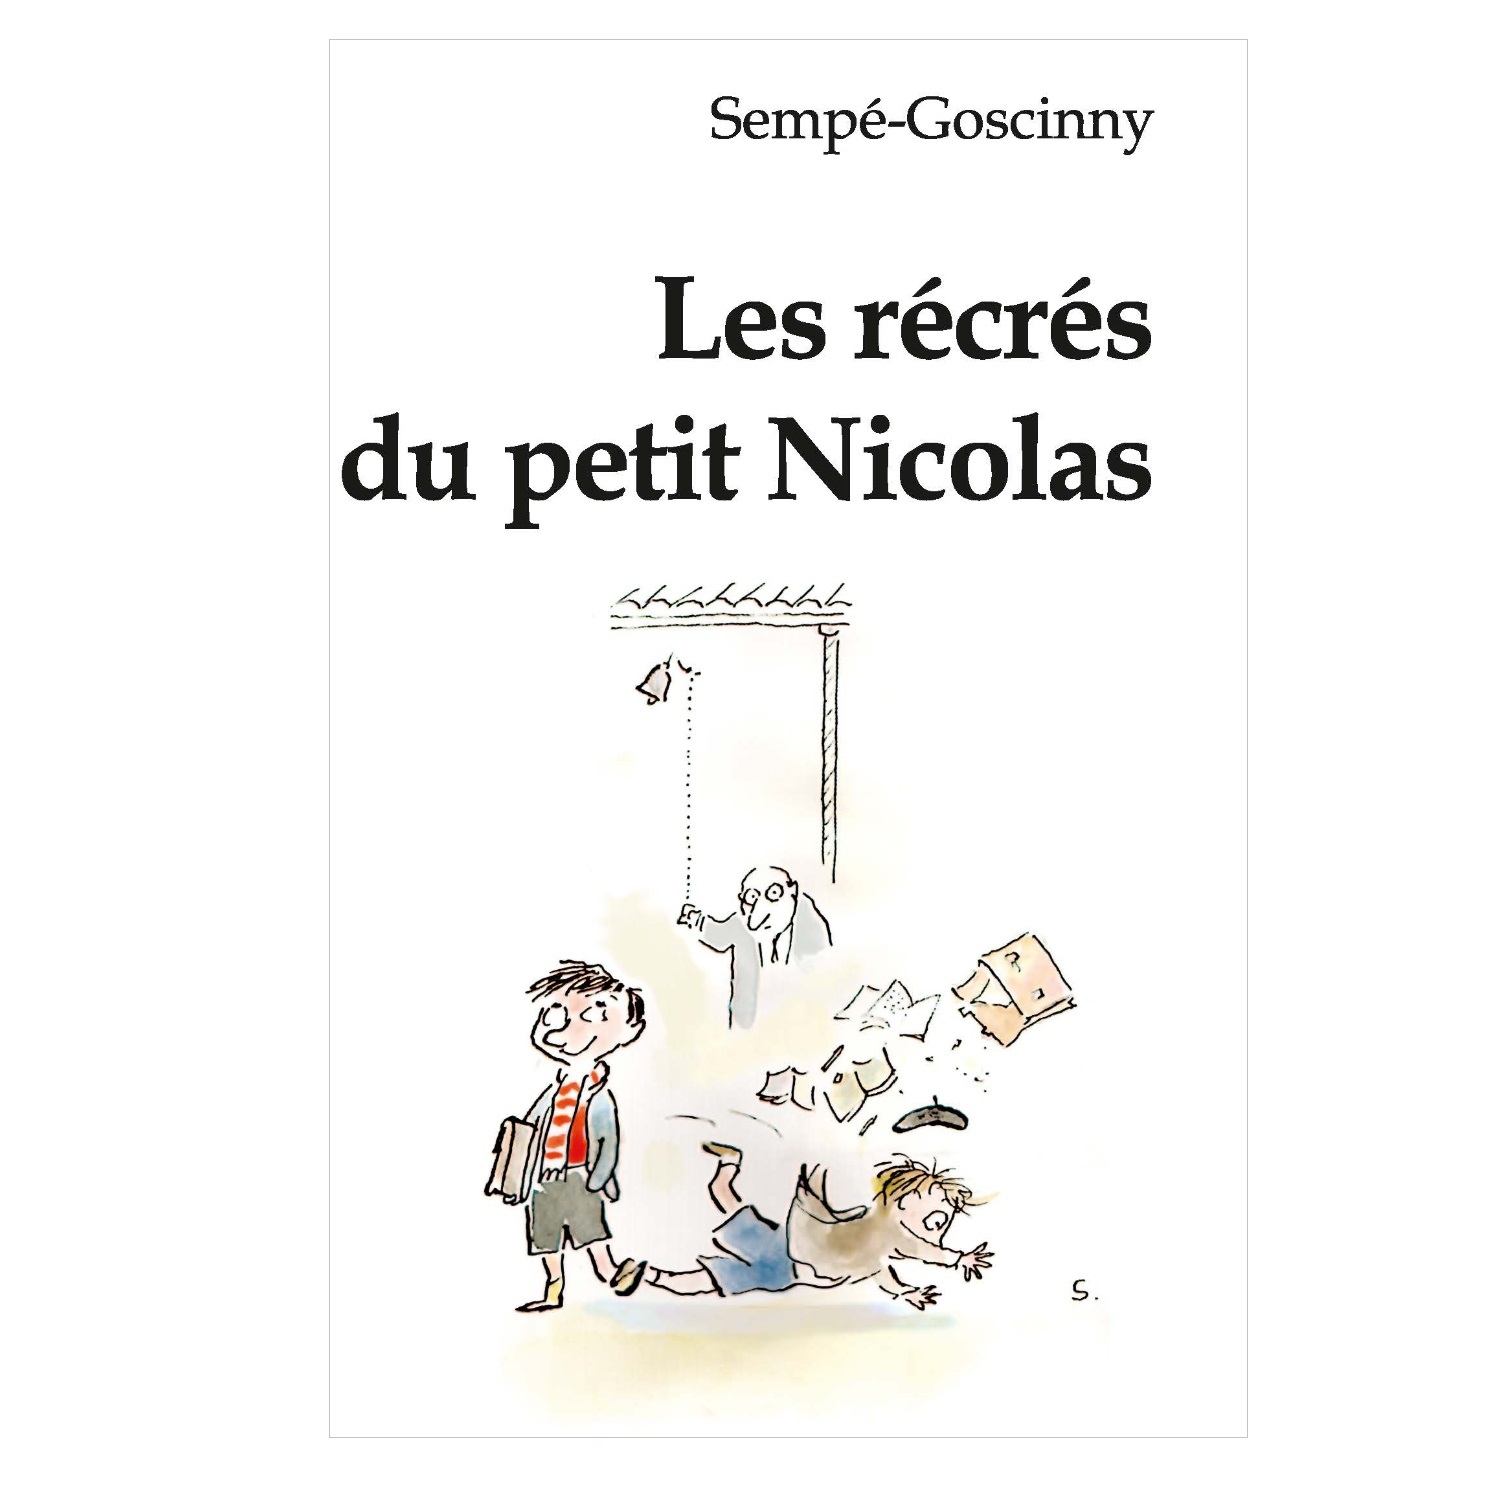 Книга Мирта-Принт Семпе-Госсини Перемены маленького Николя / на французском языке - фото 1